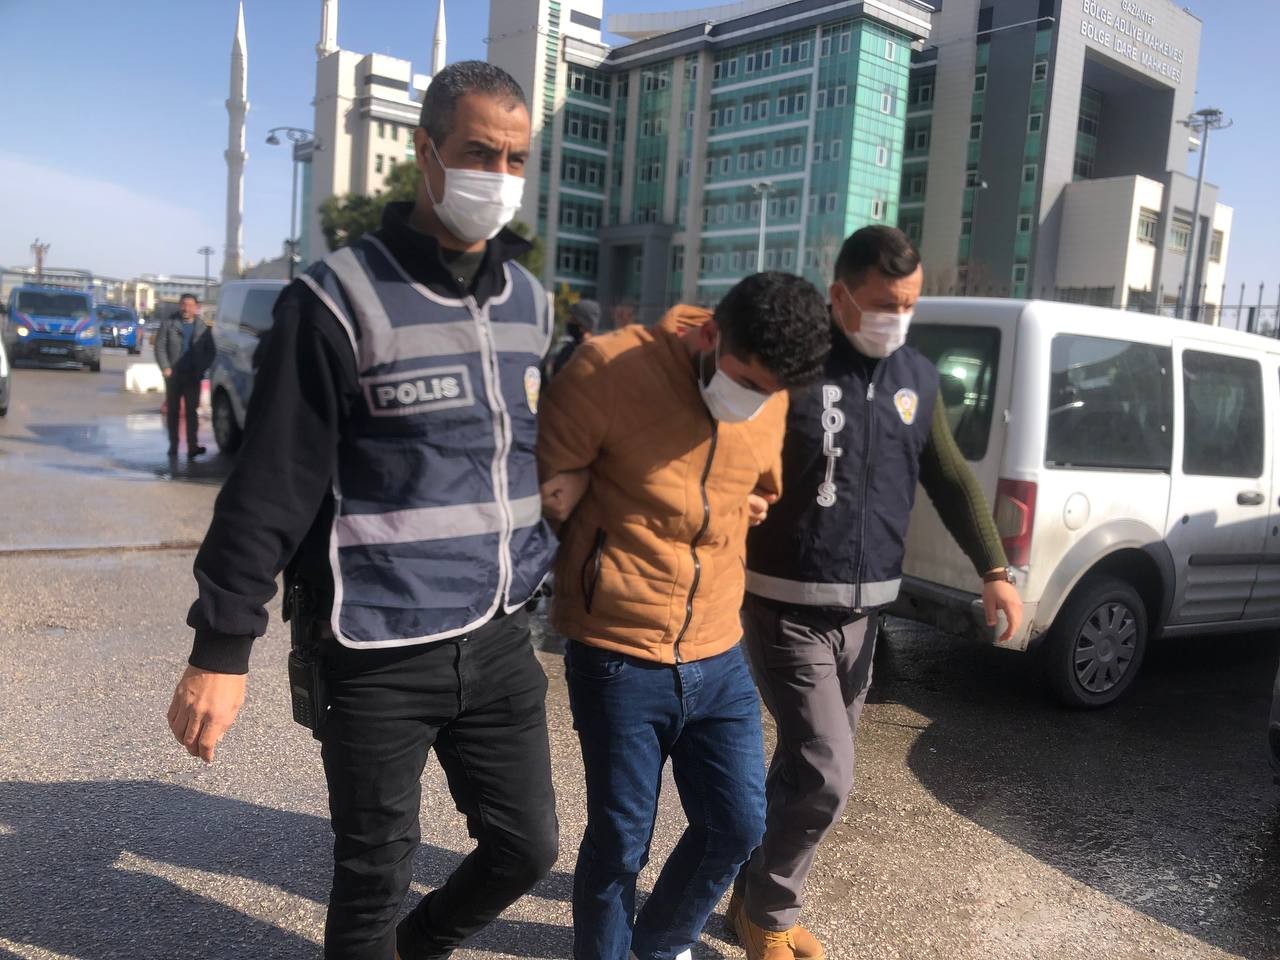 Gaziantep’te yarım kilo altın çalan soygunculardan biri yakalandı #gaziantep